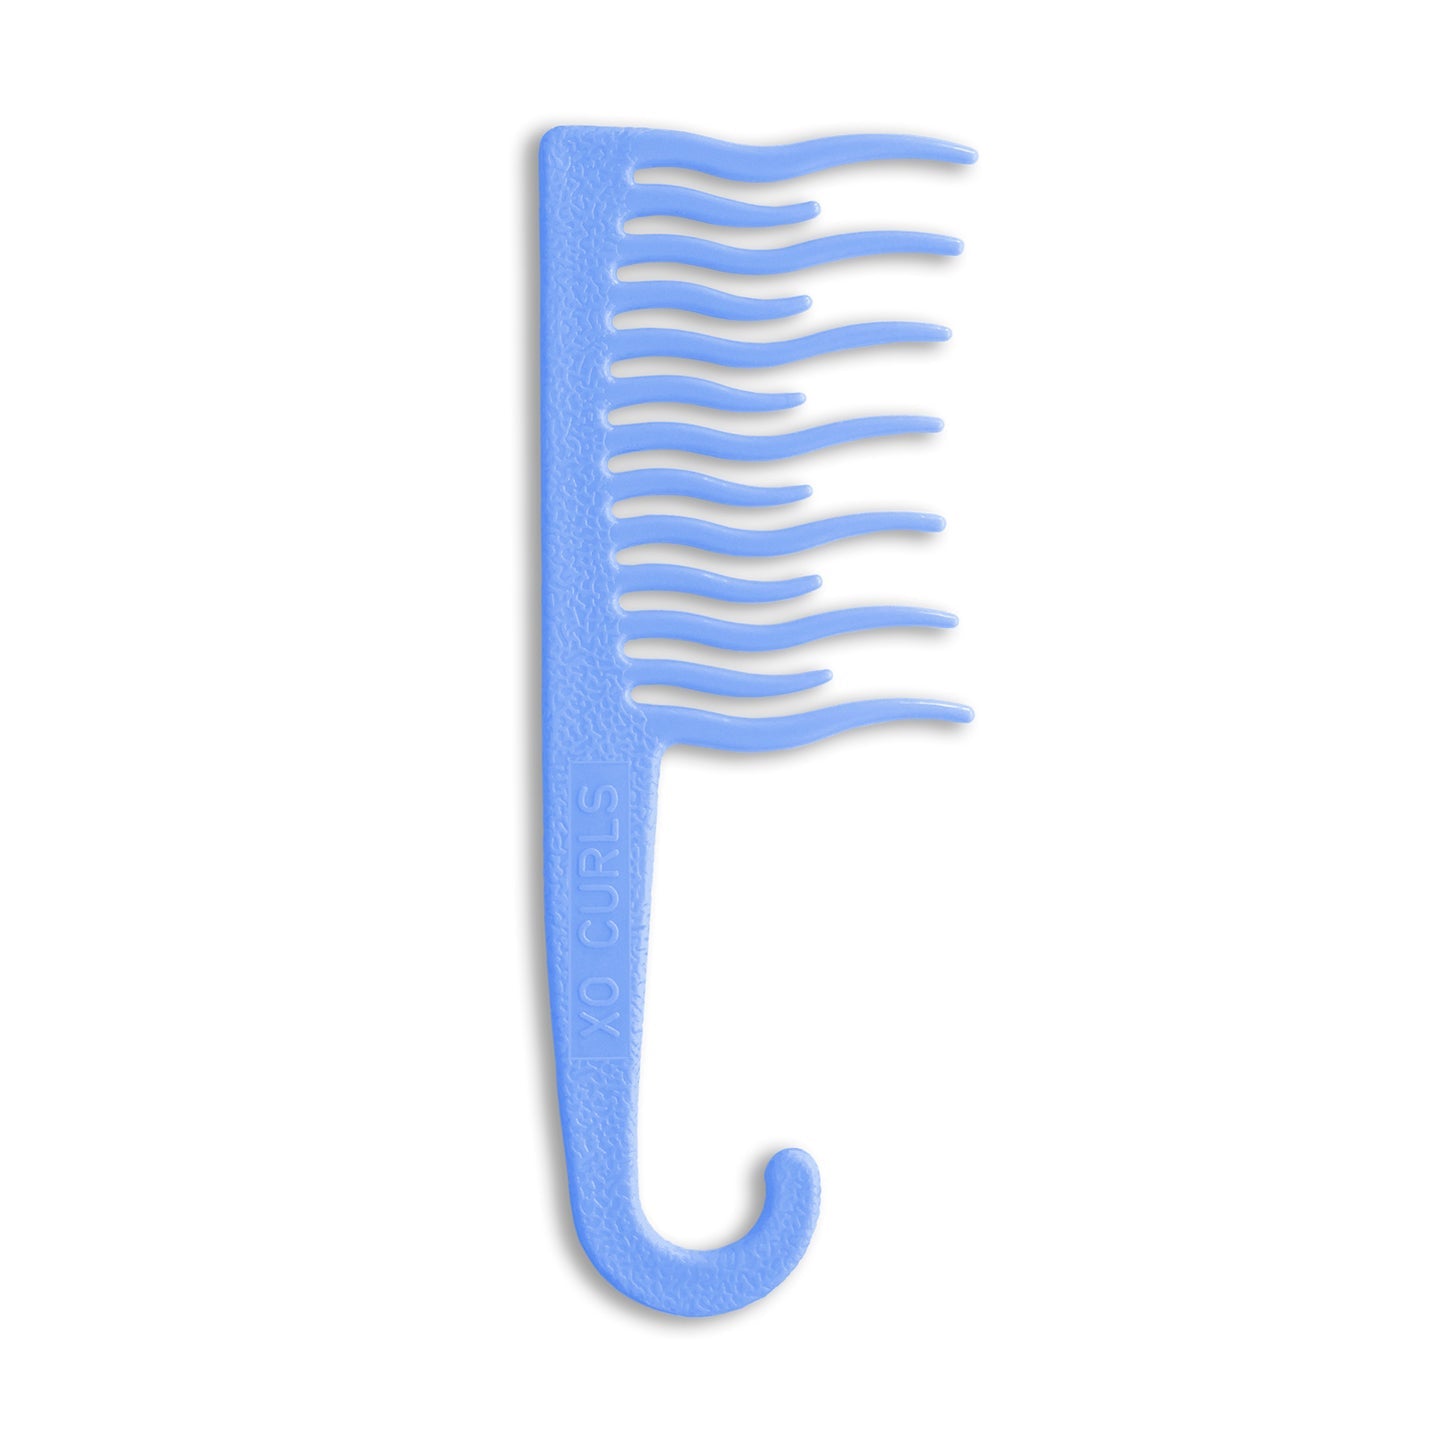 Shower Detangling Comb - Blue